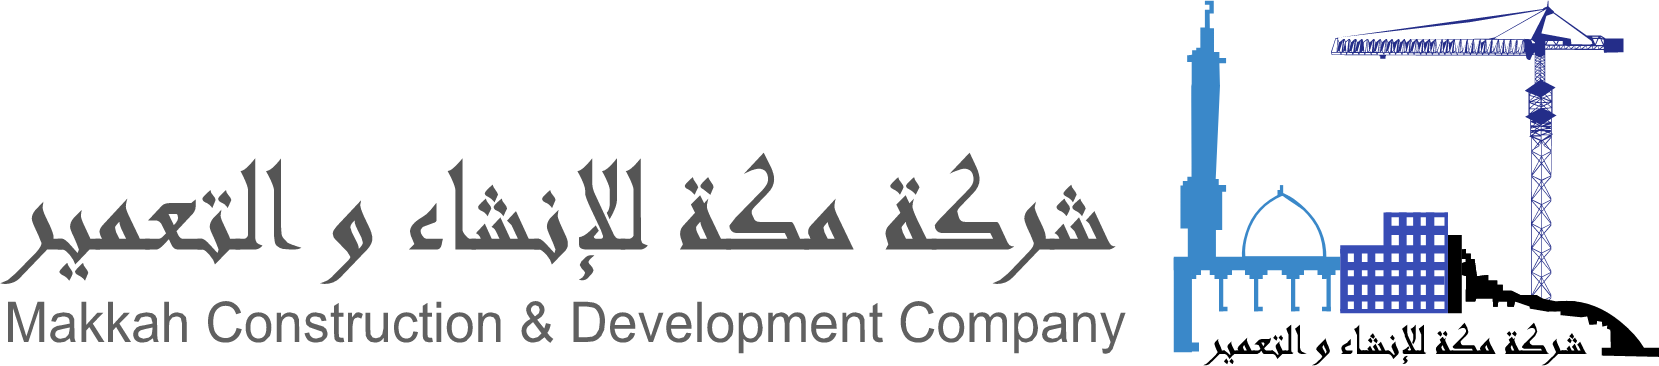 Makkah Construction & Development logo large (transparent PNG)